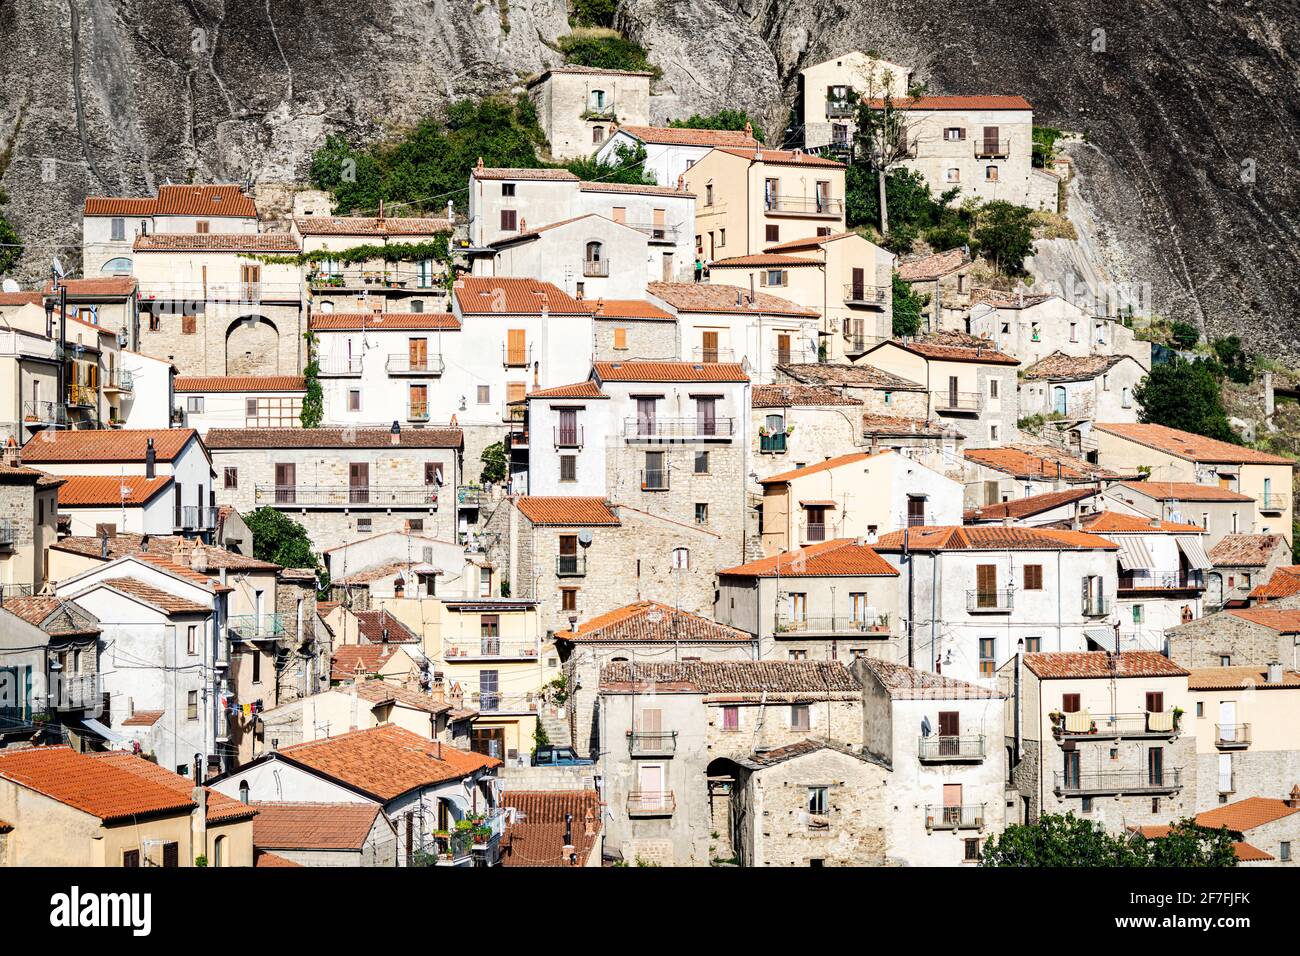 Maisons en pierre dans la ville médiévale de Castelmezzano, Dolomiti Lucane, province de Potenza, Basilicate, Italie, Europe Banque D'Images